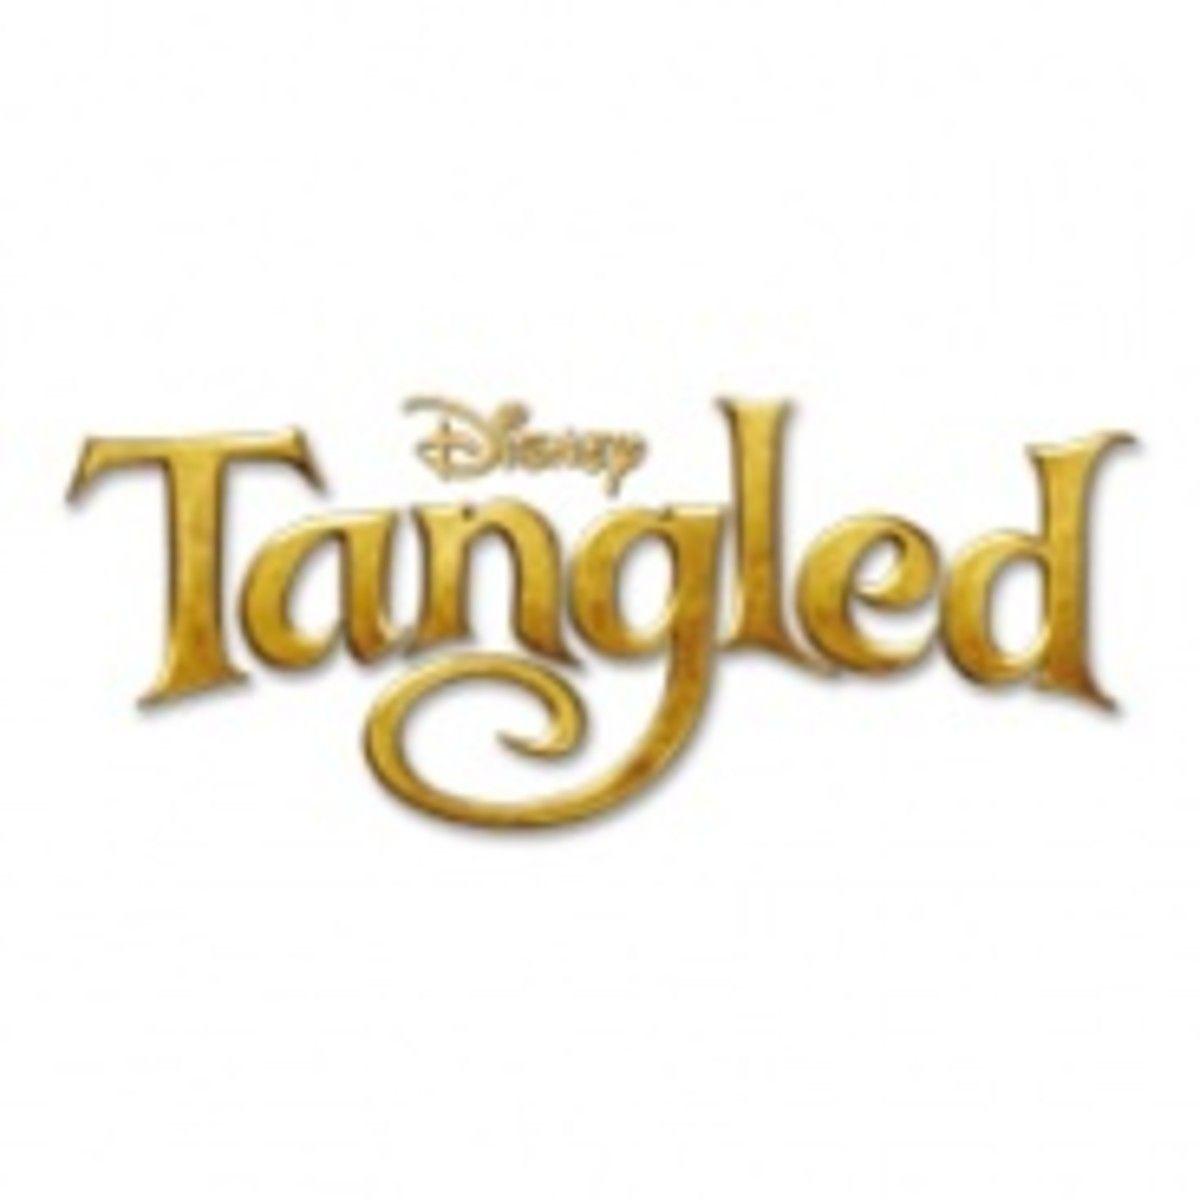 Tangled Movie Logo - Disney's Tangled tops the box office - Licensing.biz